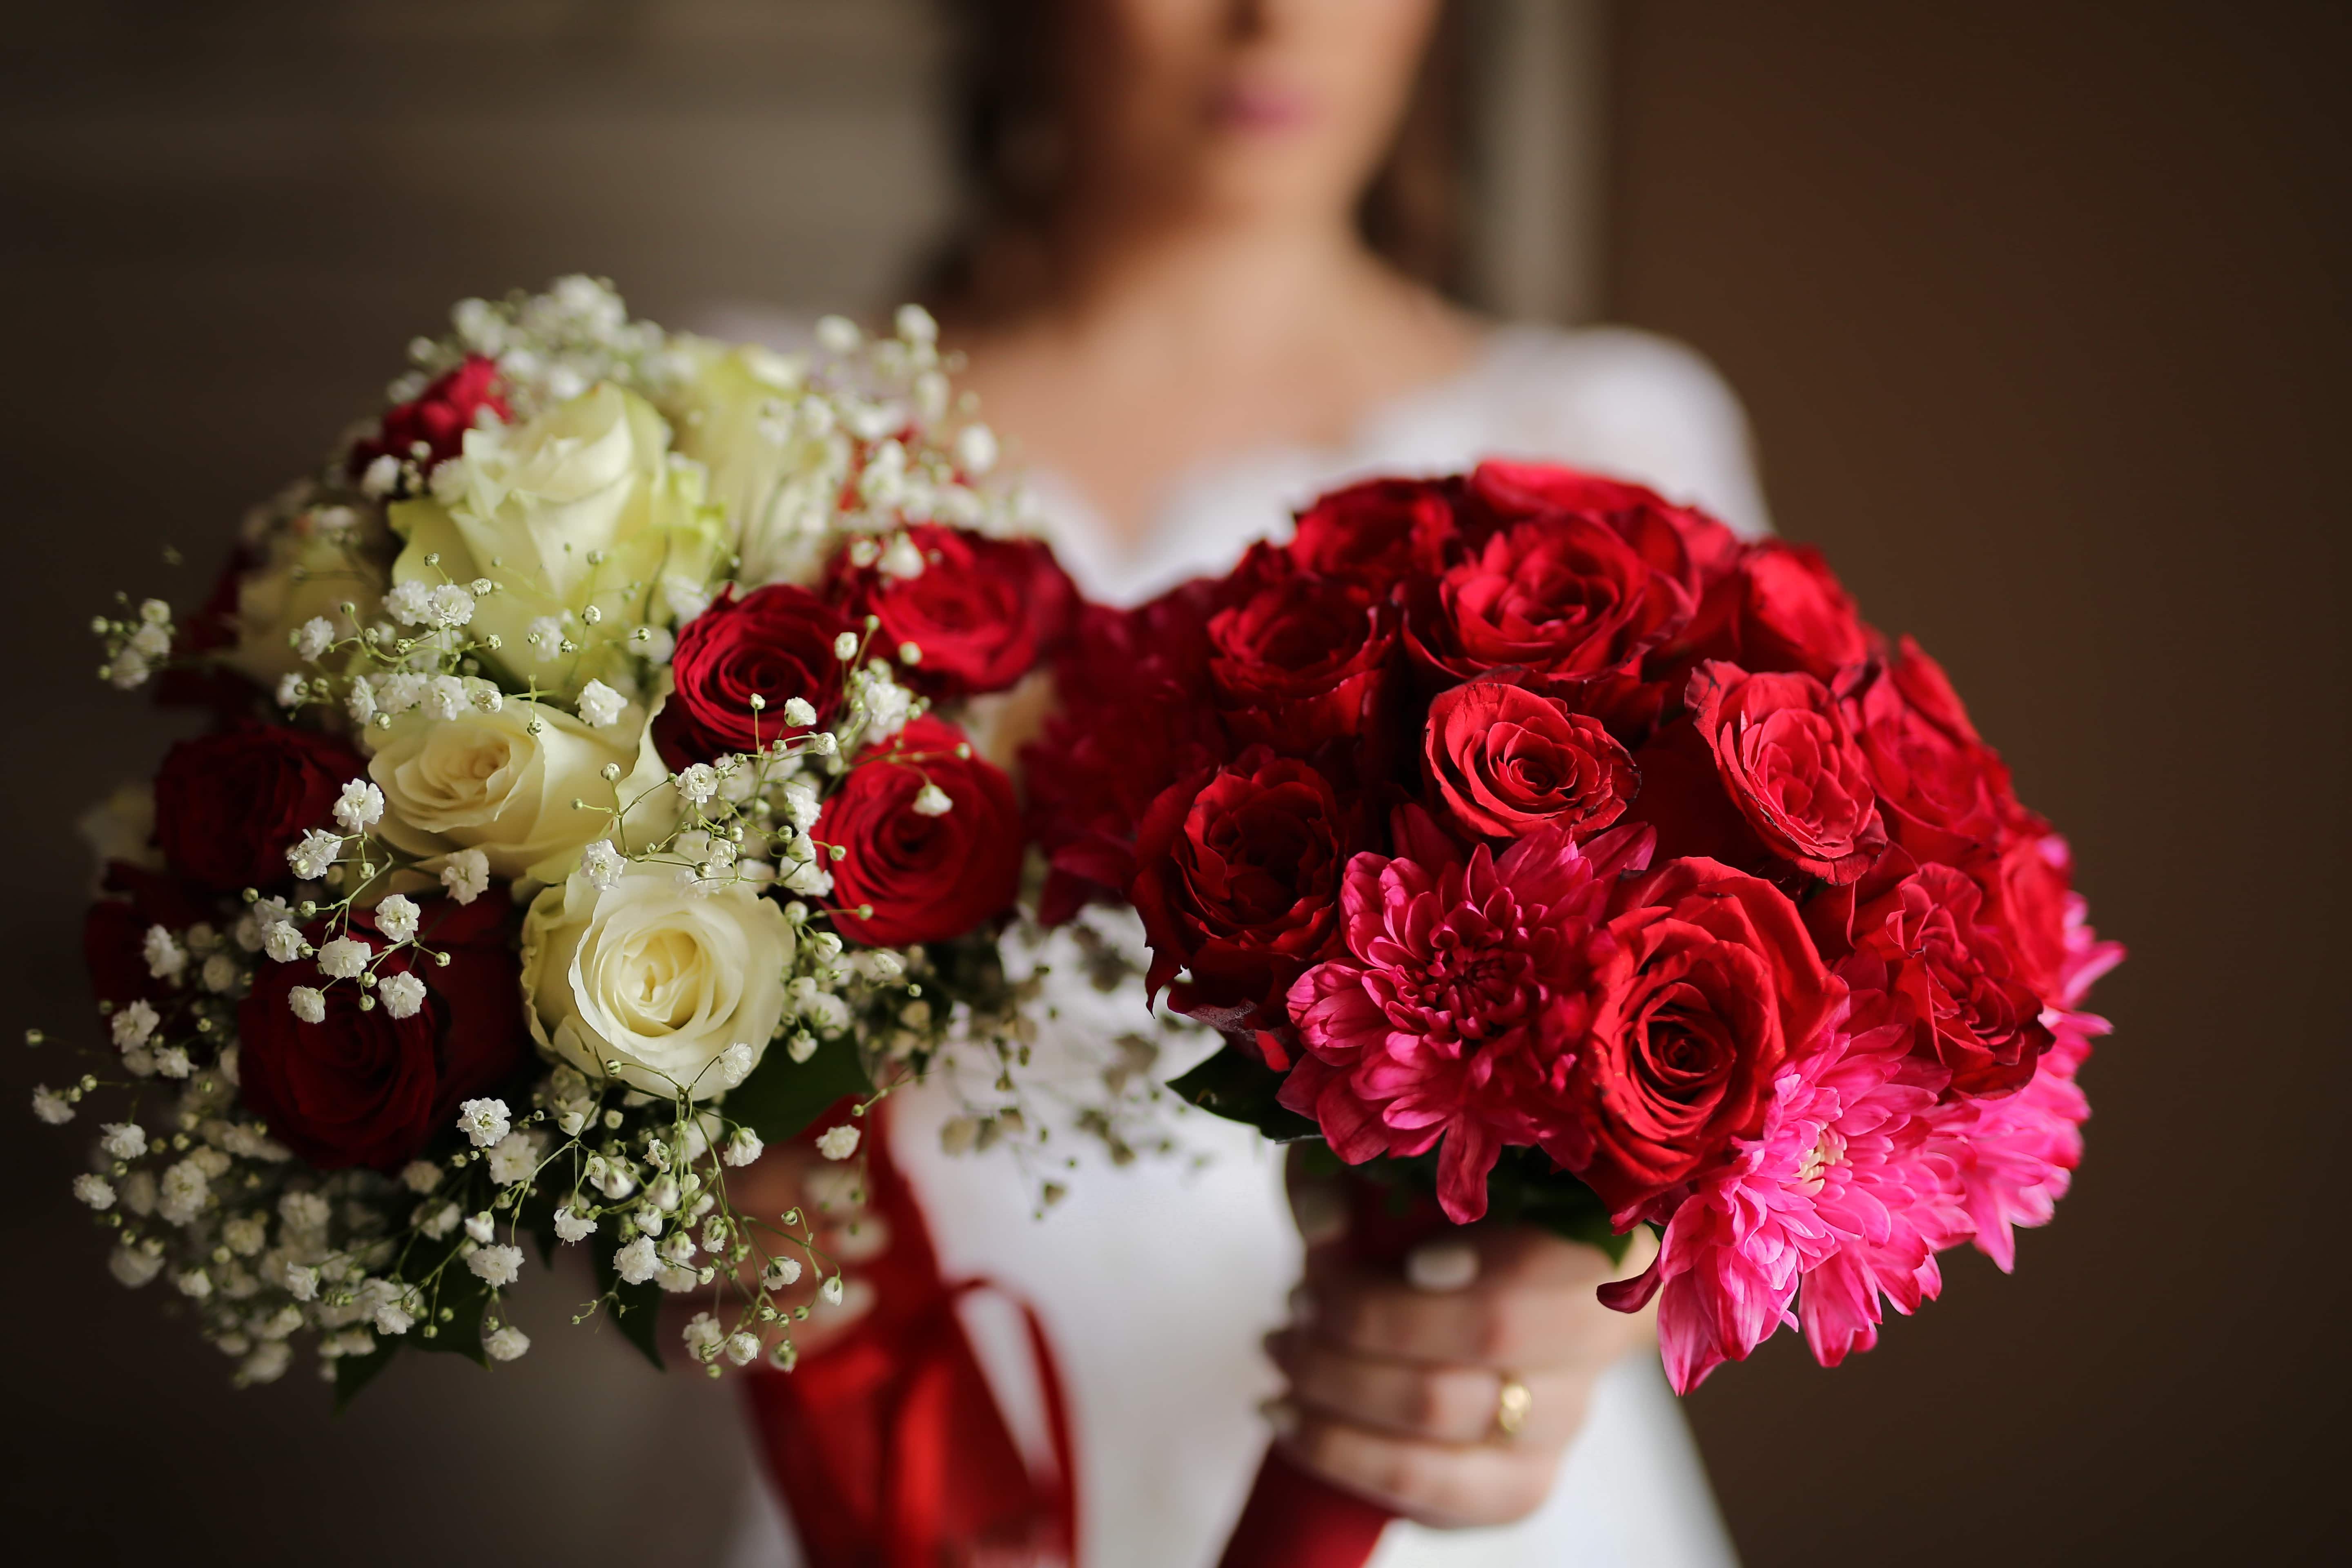 免费照片 婚礼 婚礼花束 玫瑰 红 束 新娘 浪漫 爱 花 上升